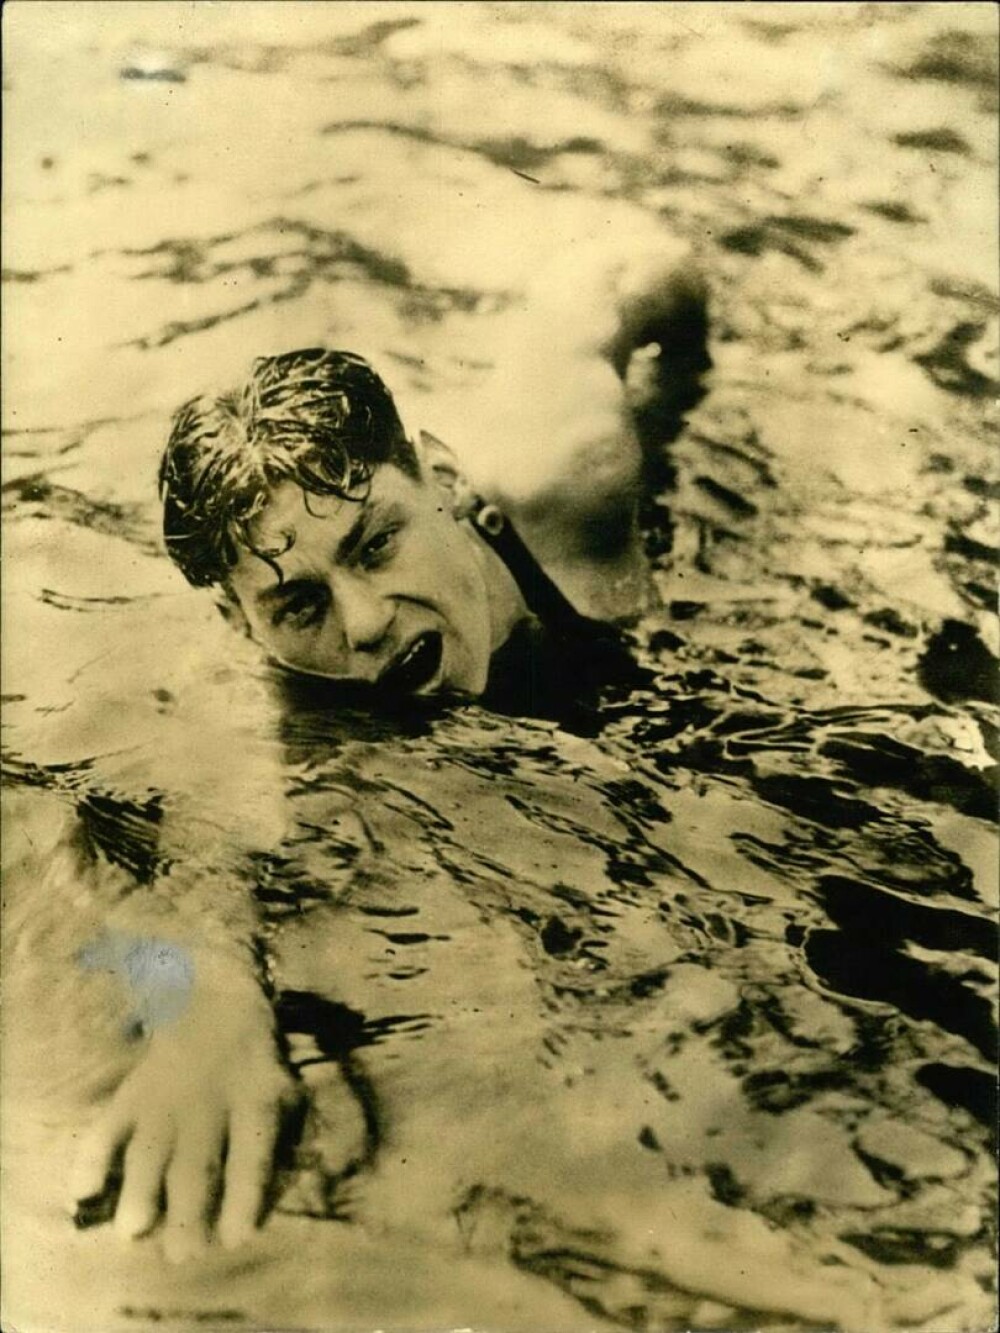 100 de ani de când Johnny Weissmüller a devenit primul înotător care a realizat 100 de metri în sub un minut. GALERIE FOTO - Imaginea 1